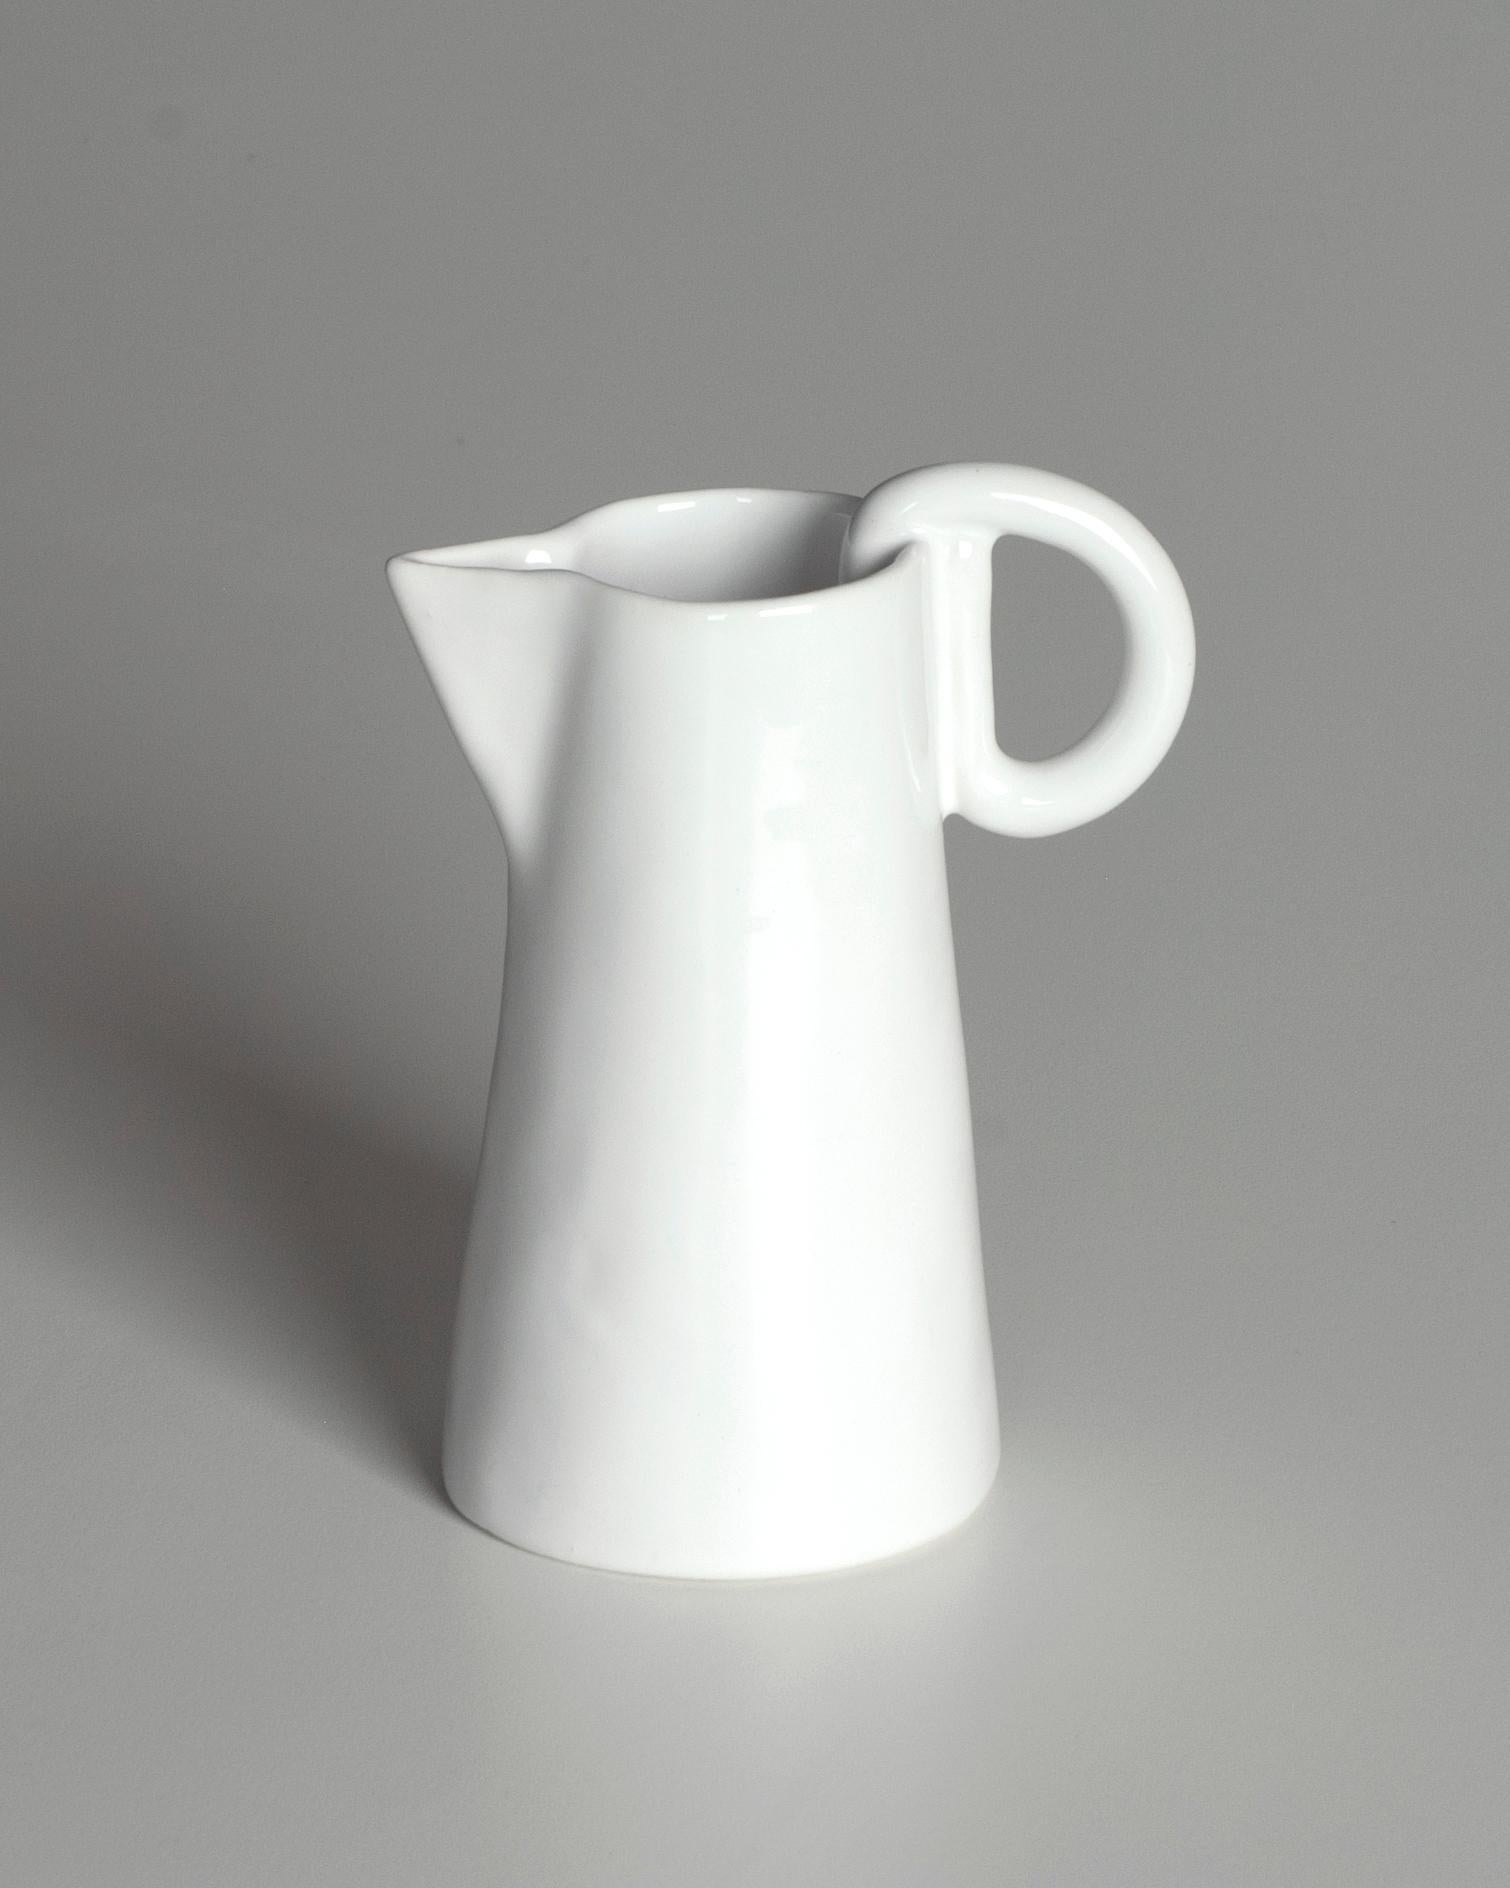 Délicate cruche en céramique blanche, entièrement fabriquée à la main. L'émaillage, appliqué selon la technique du trempage, confère au pot une élégance simple et un caractère unique.